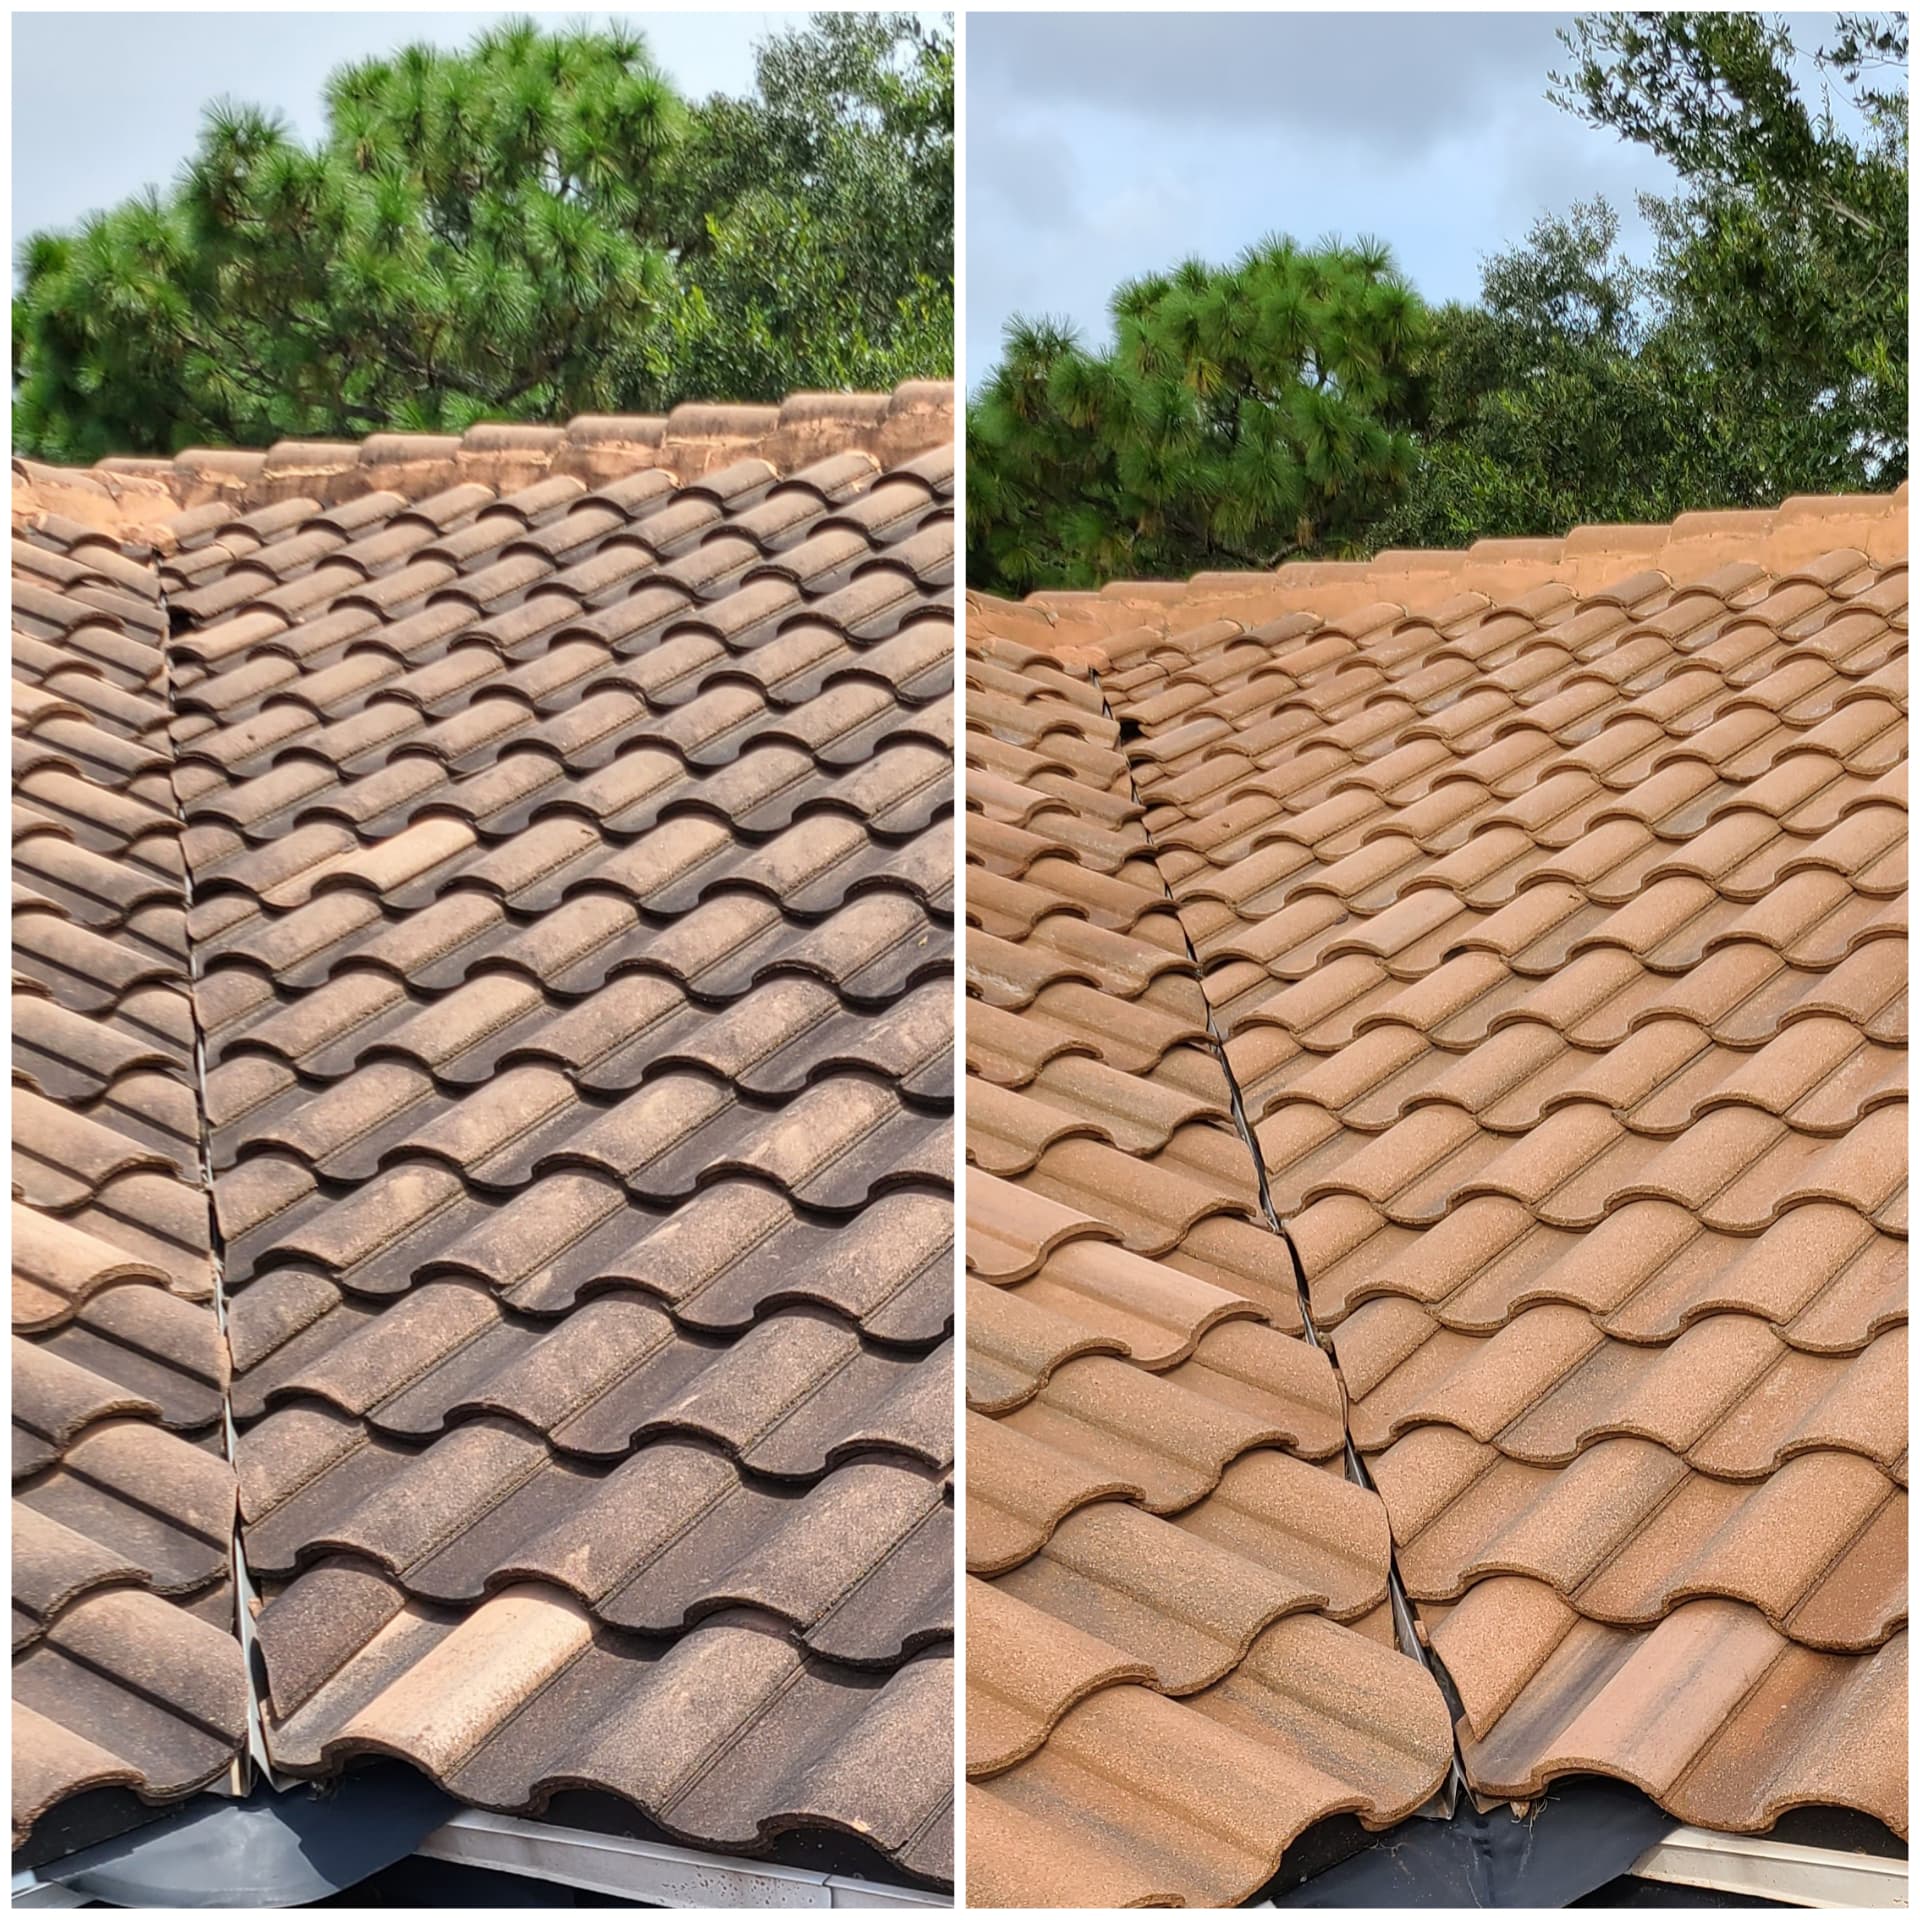 Barrel tile roof wash destin fl